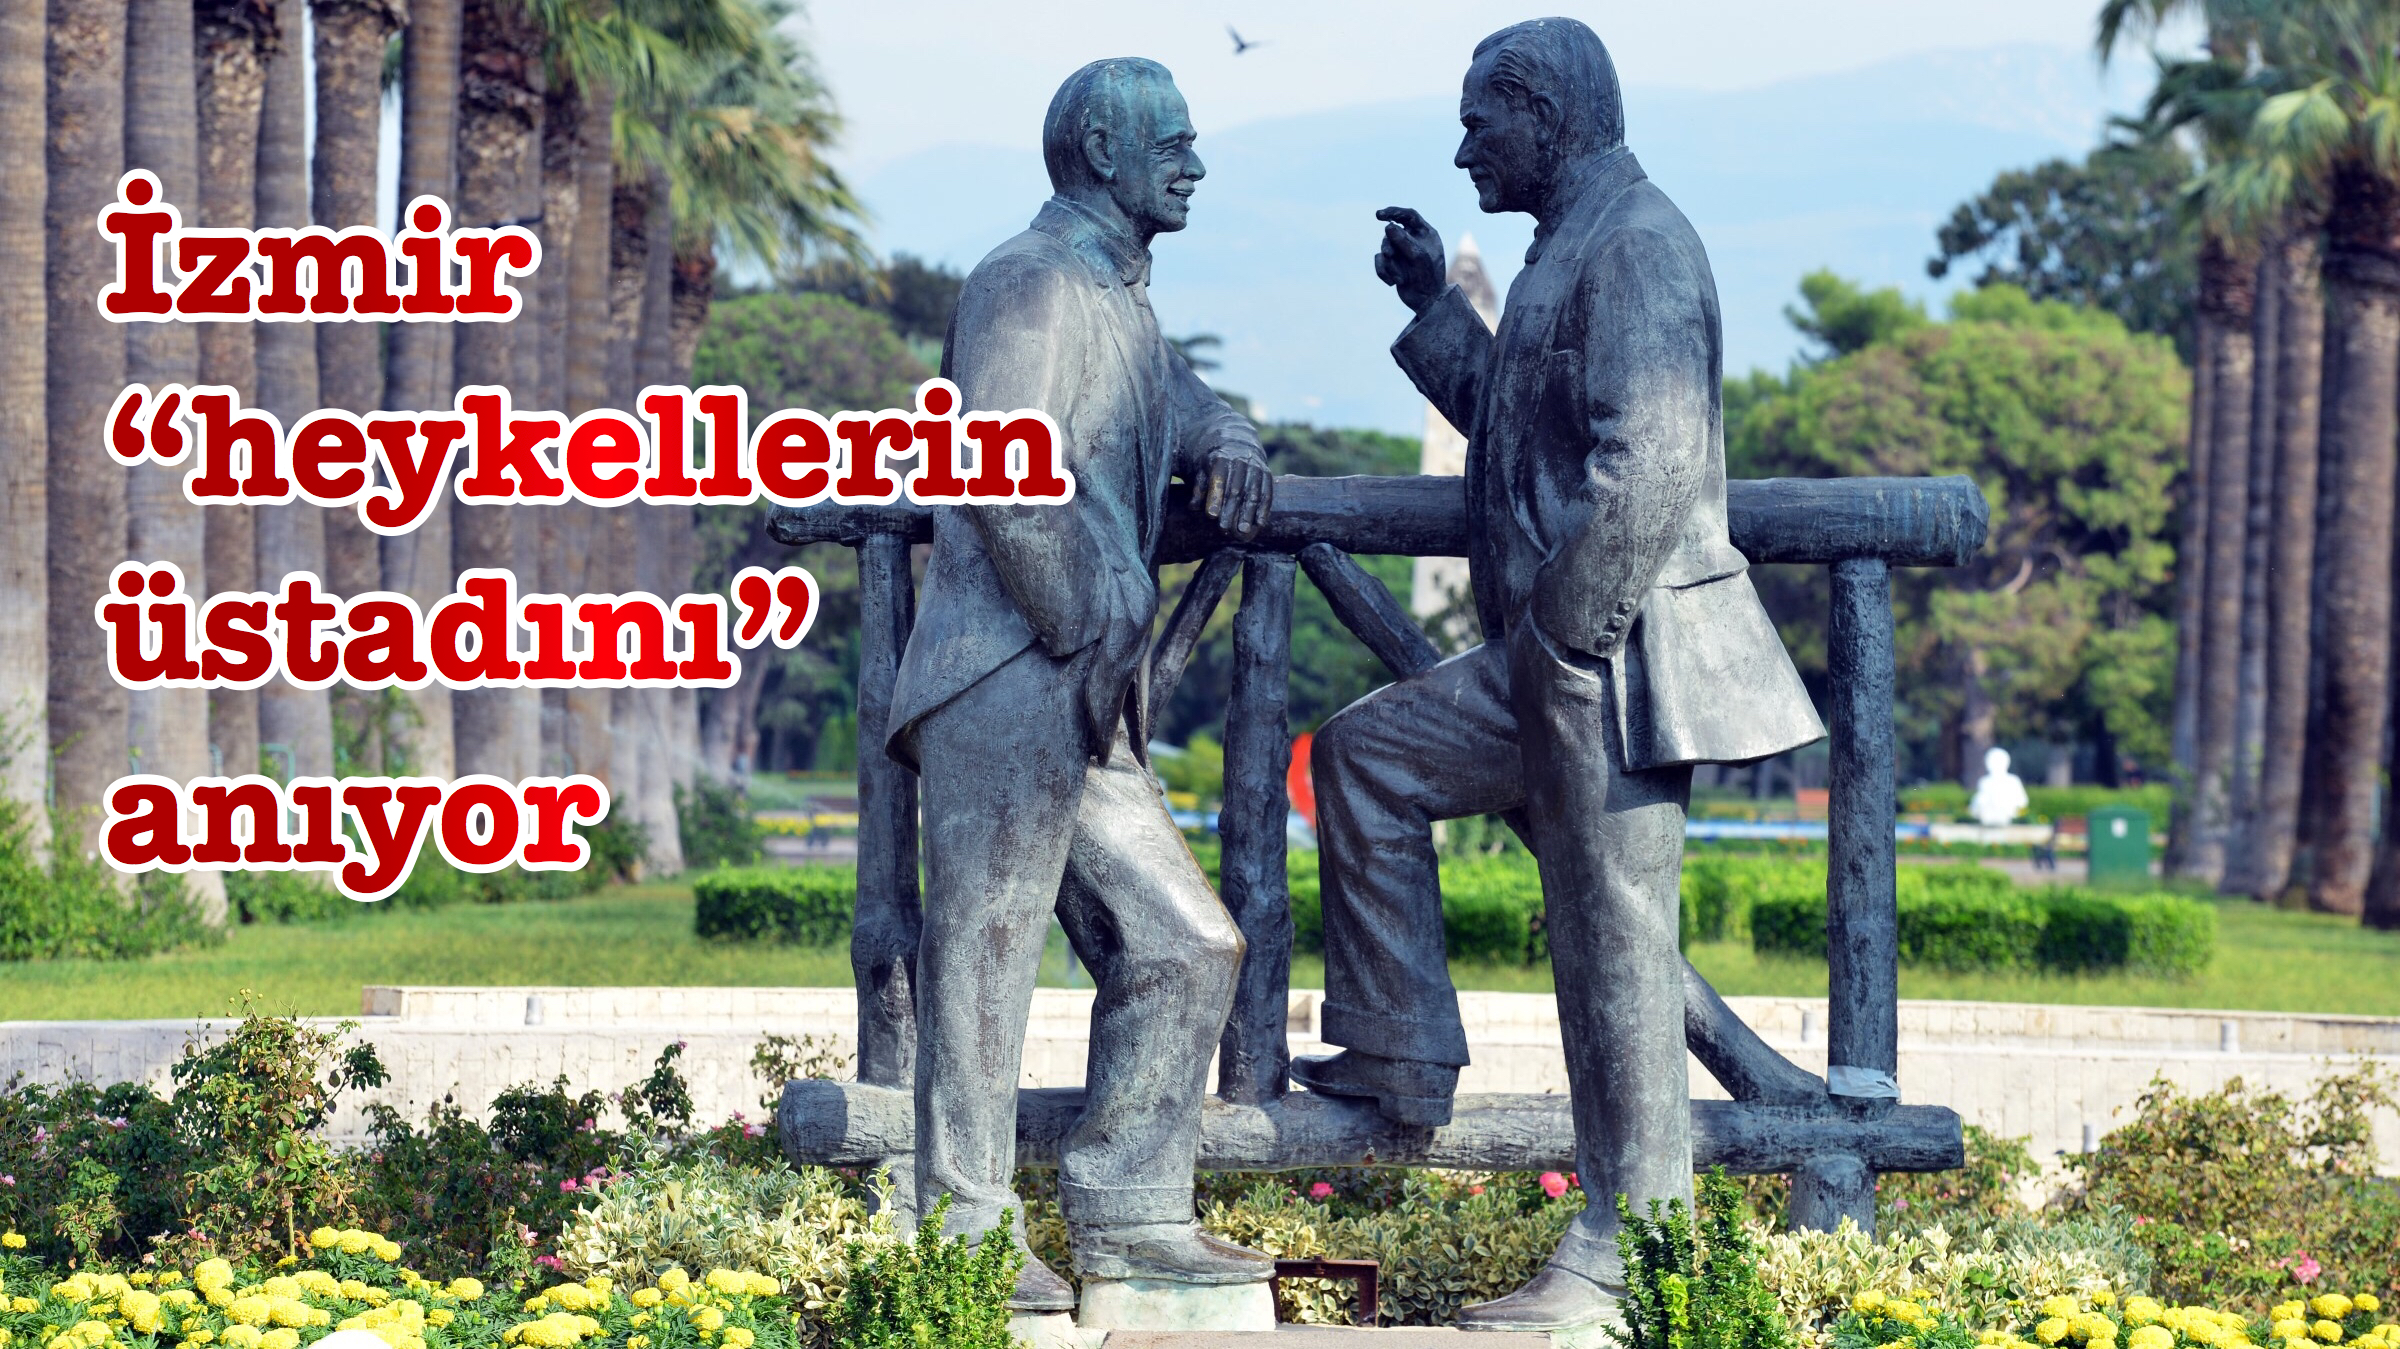 İzmir “heykellerin üstadını” anıyor